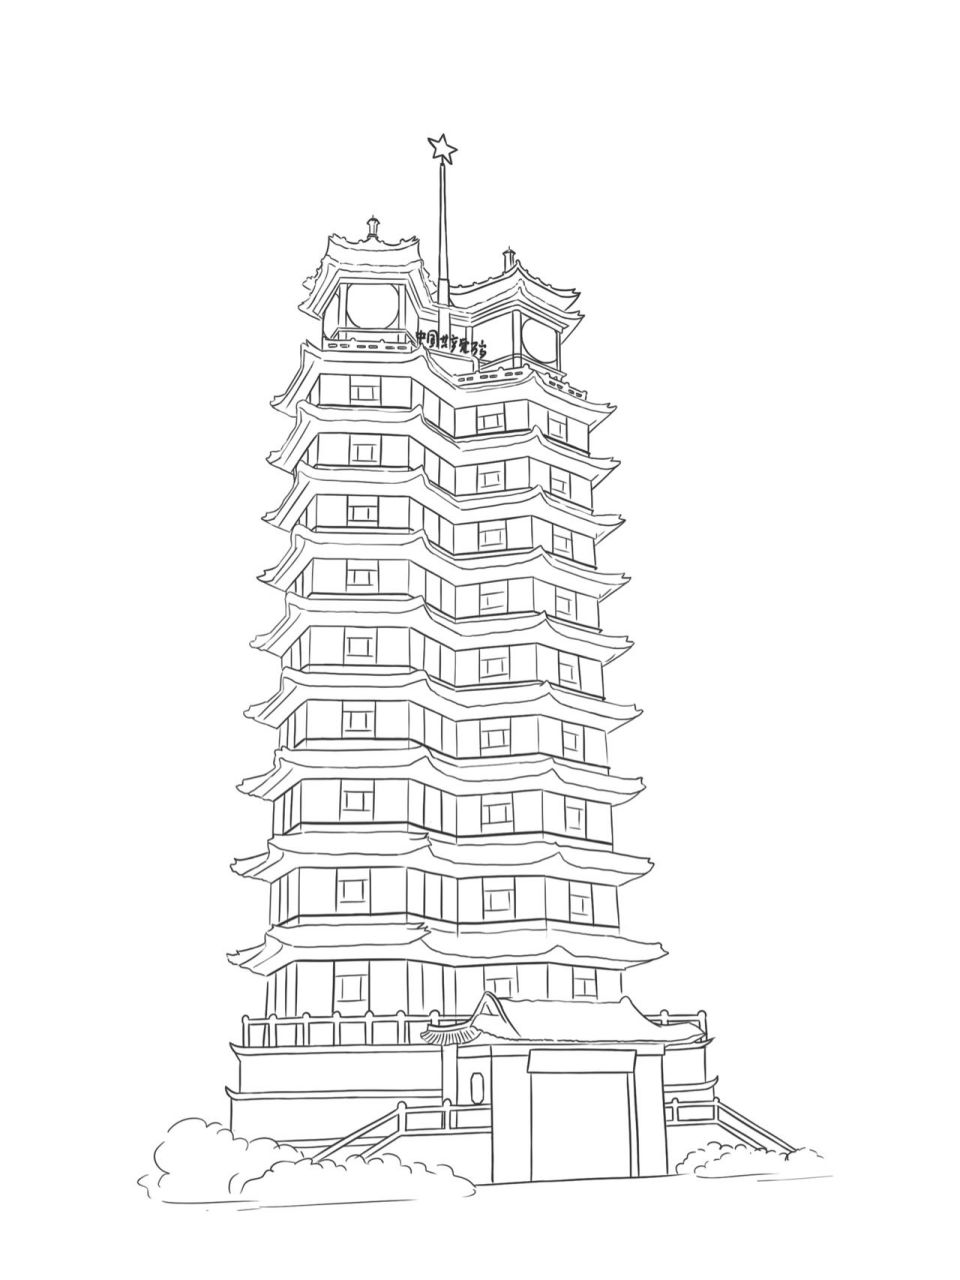 河南城市插画系列 郑州二七塔 最近画的河南城市插画中的一个部分